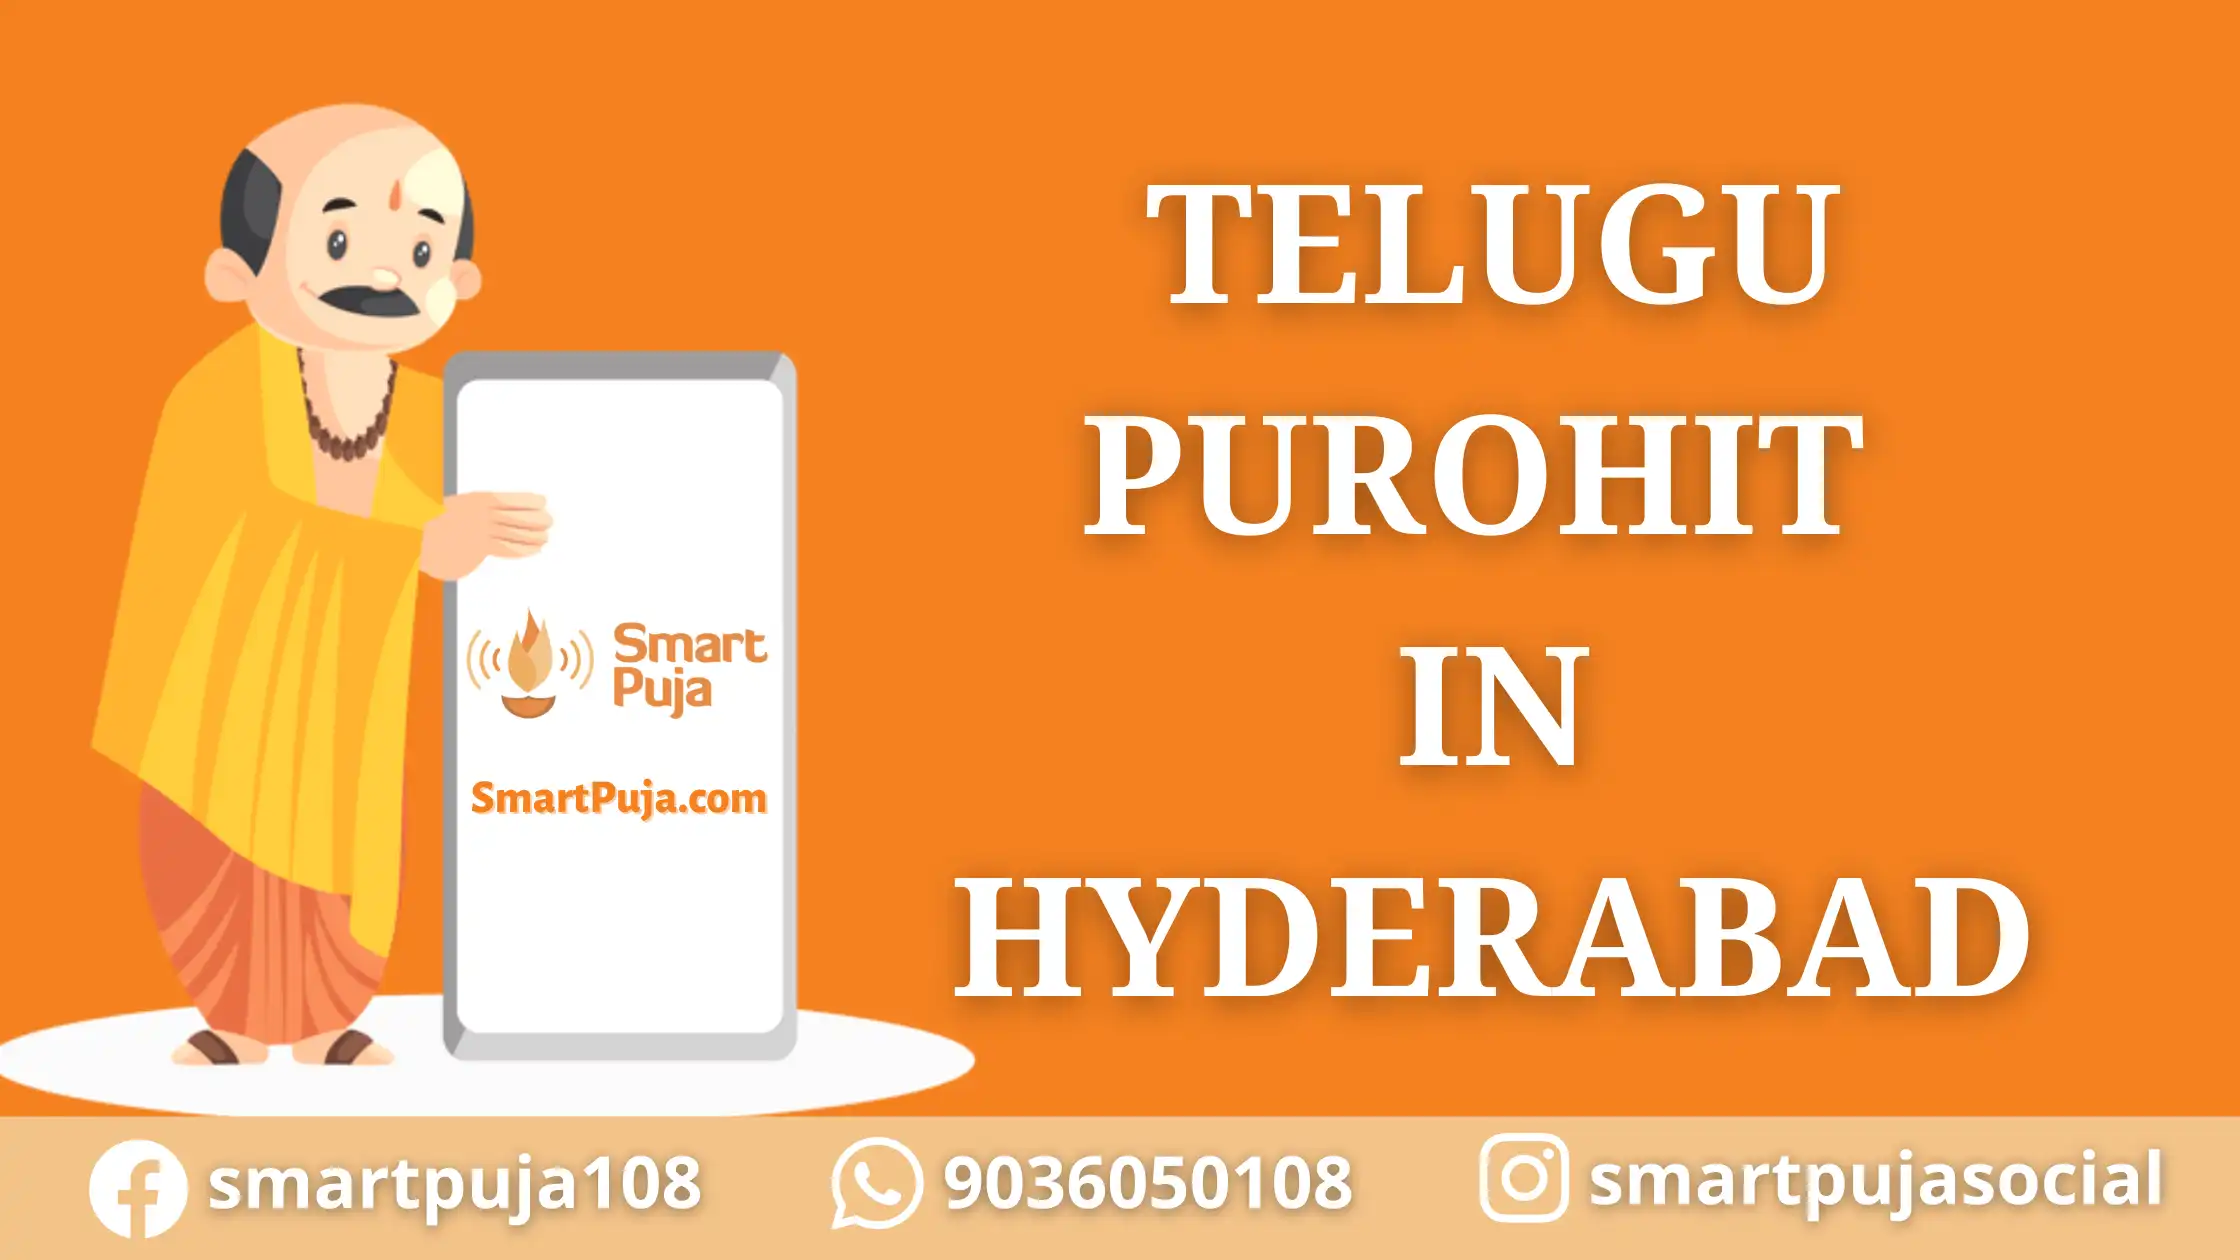 Best Telugu Purohit in Hyderabad